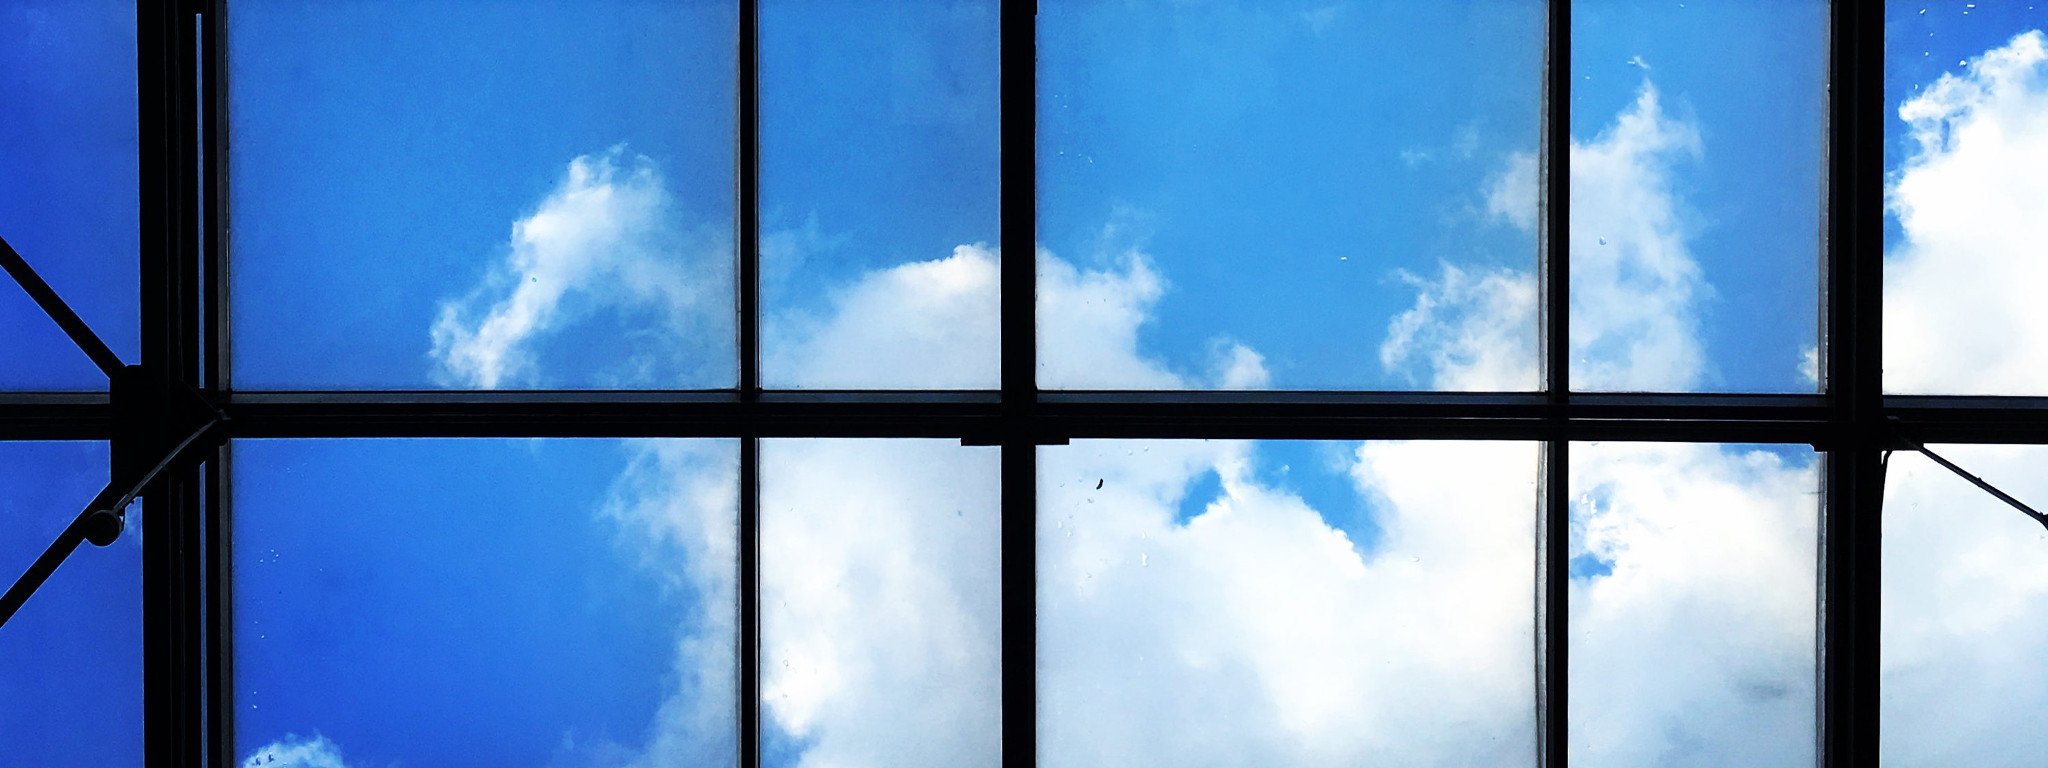 Okno, przez które widać błękitne niebo i delikatne białe chmurki